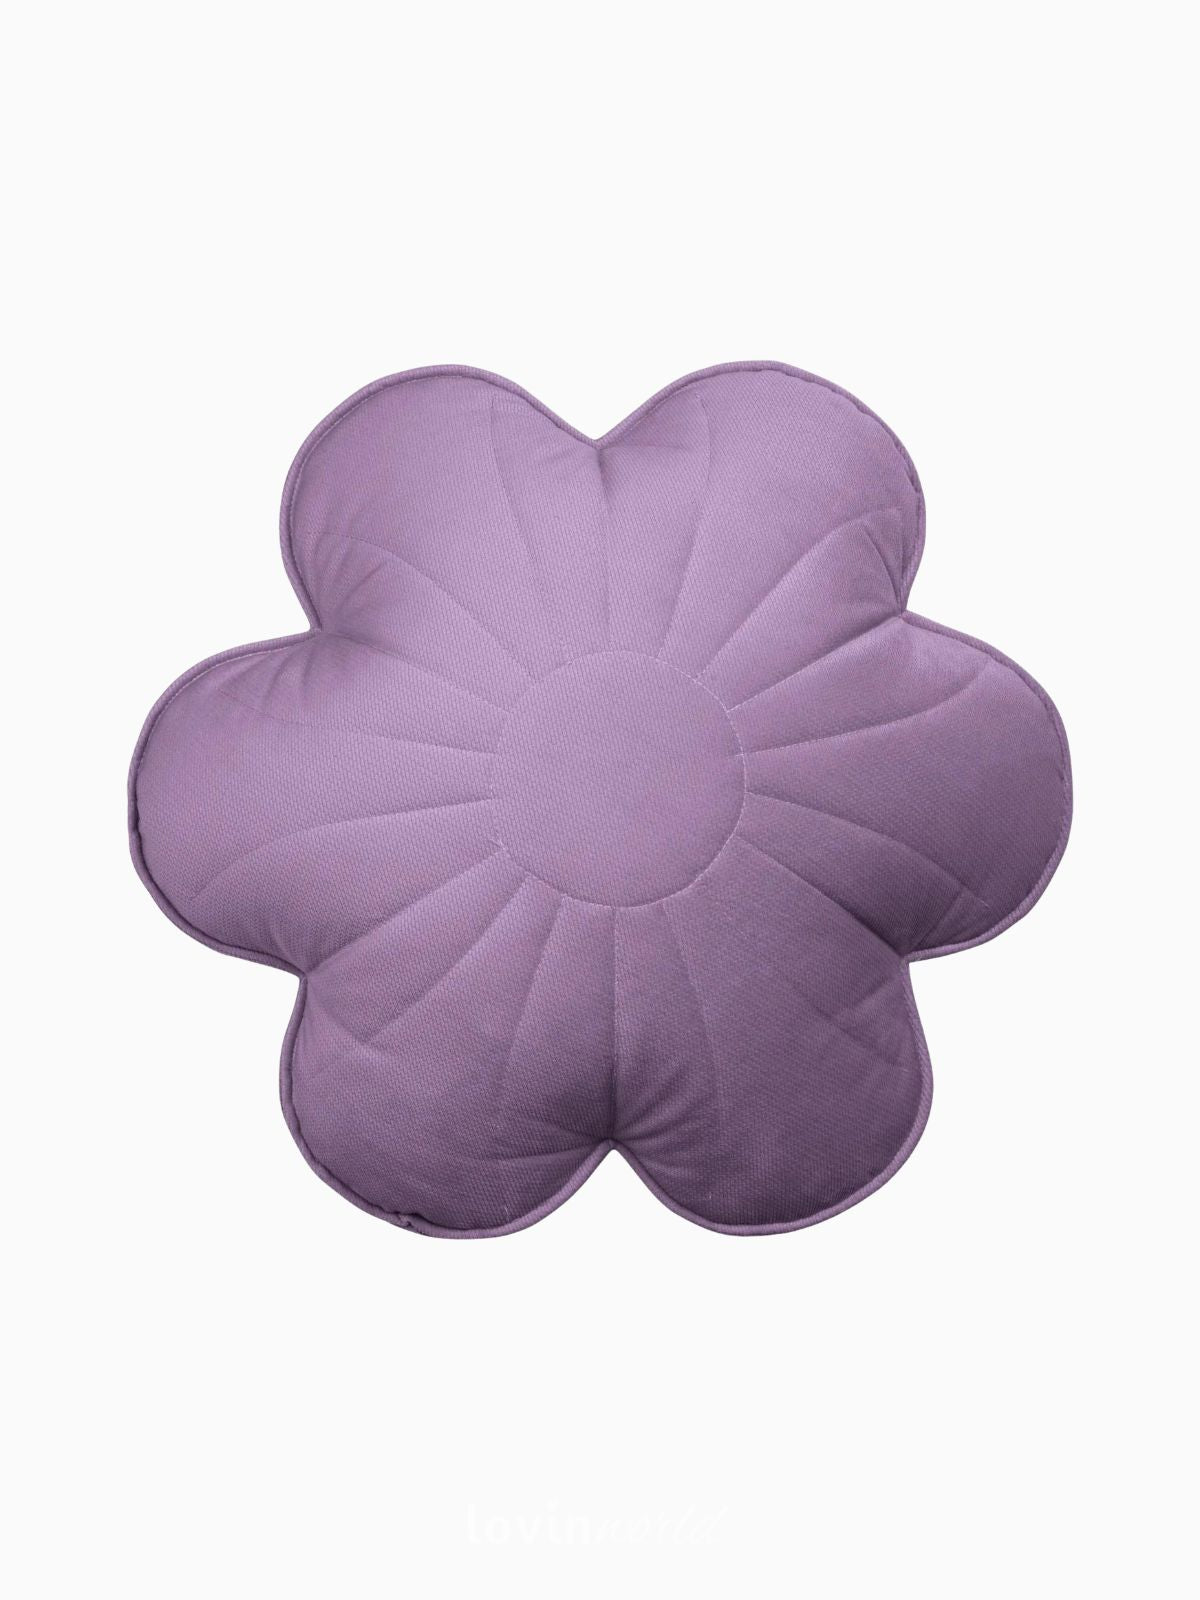 Cuscino fiore 100% velluto in colore viola 49x49 cm.-1